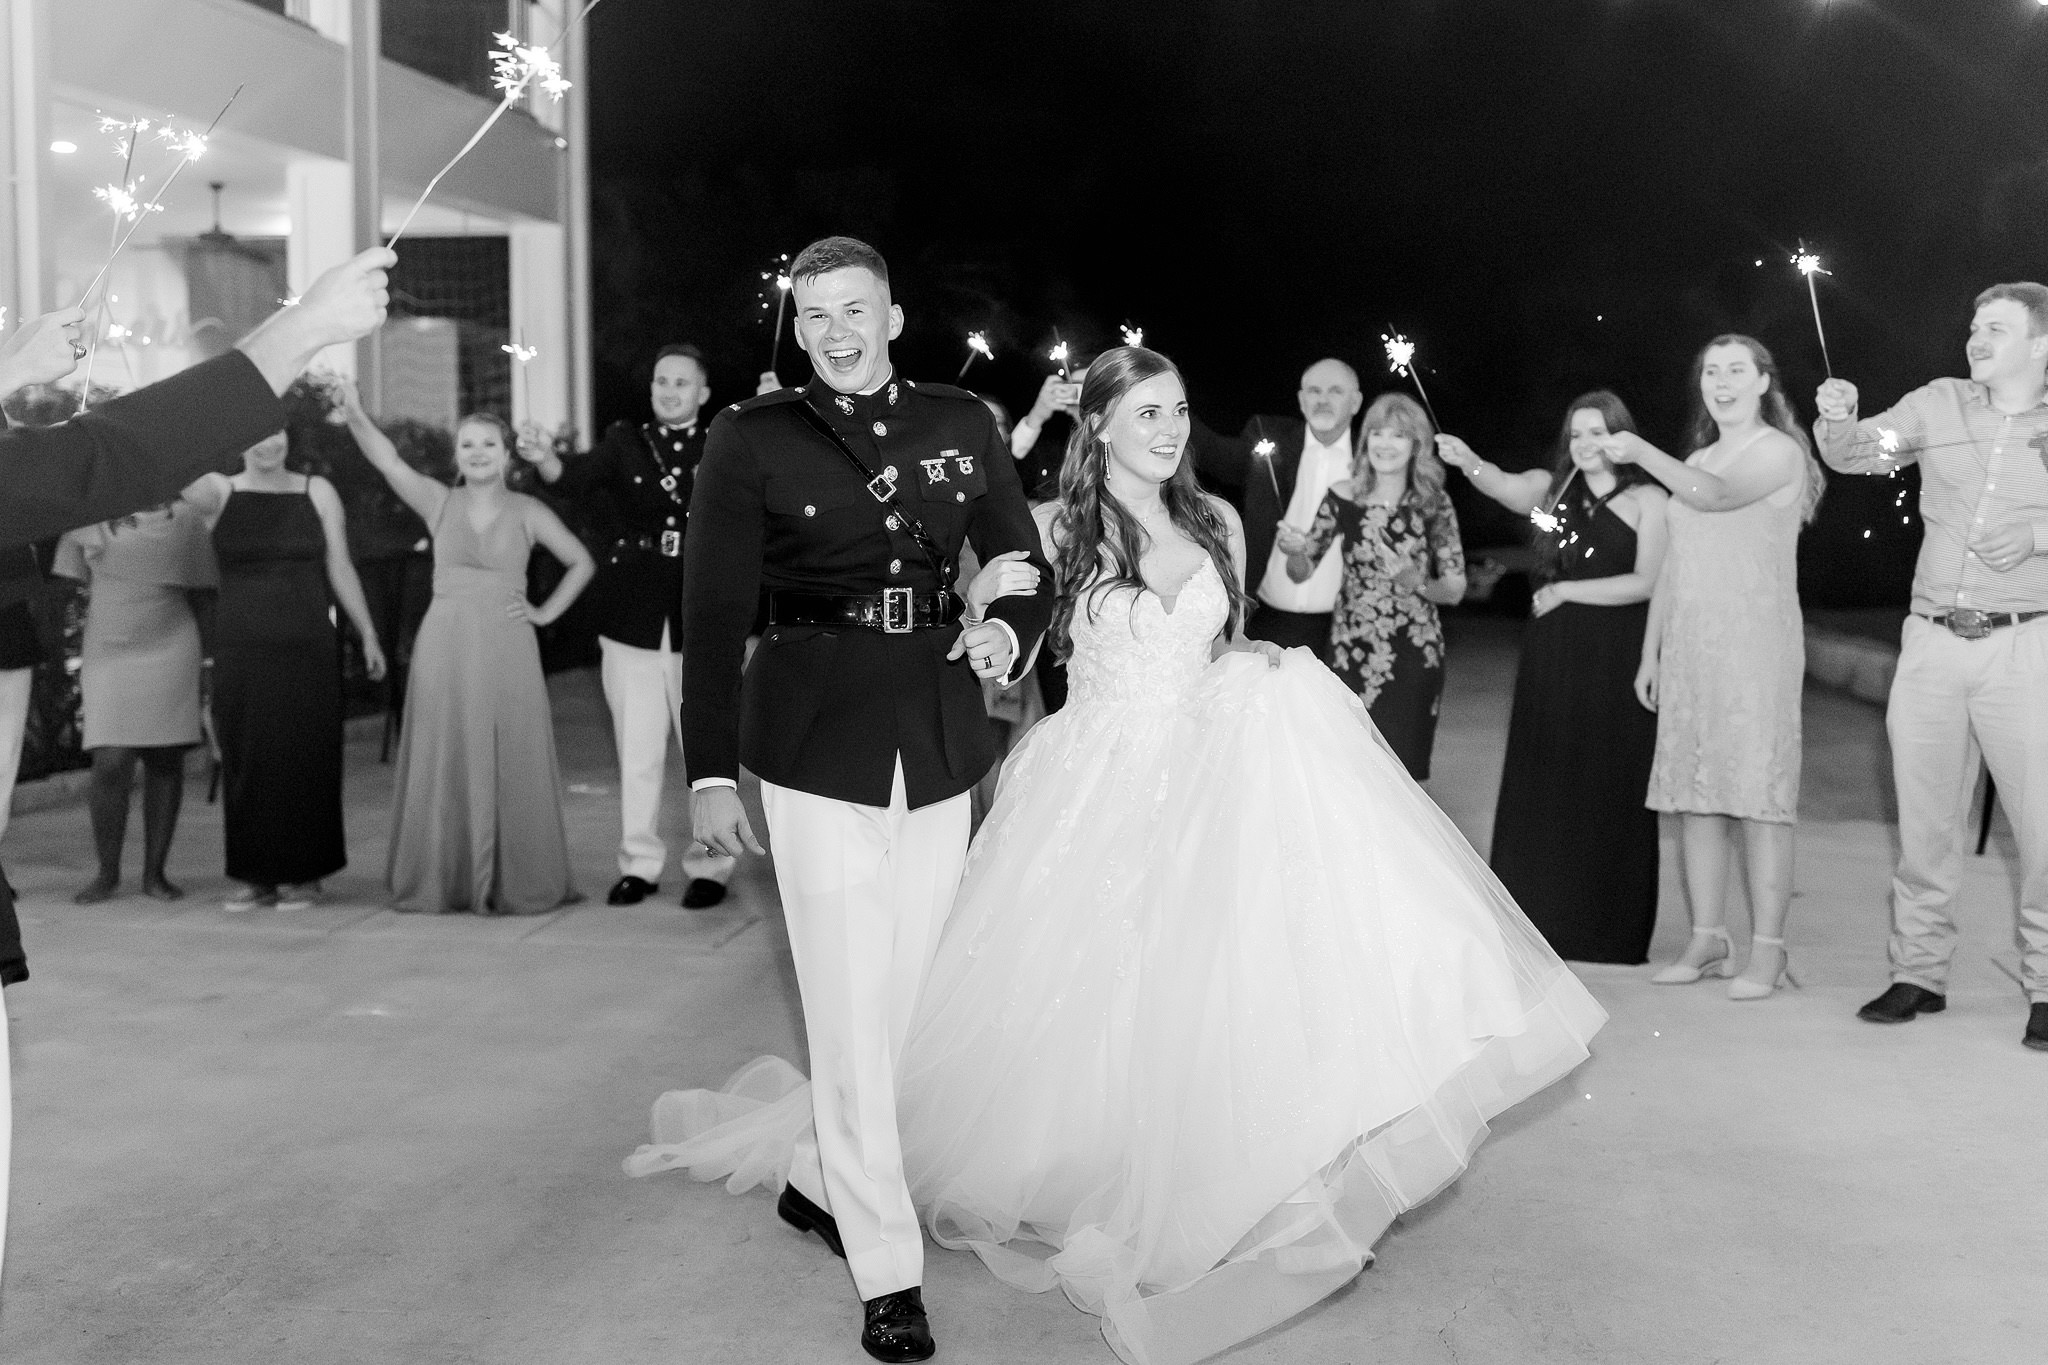 Wedding at Kendall Point in Boerne, TX by Dawn Elizabeth Studios, San Antonio Wedding Photographer